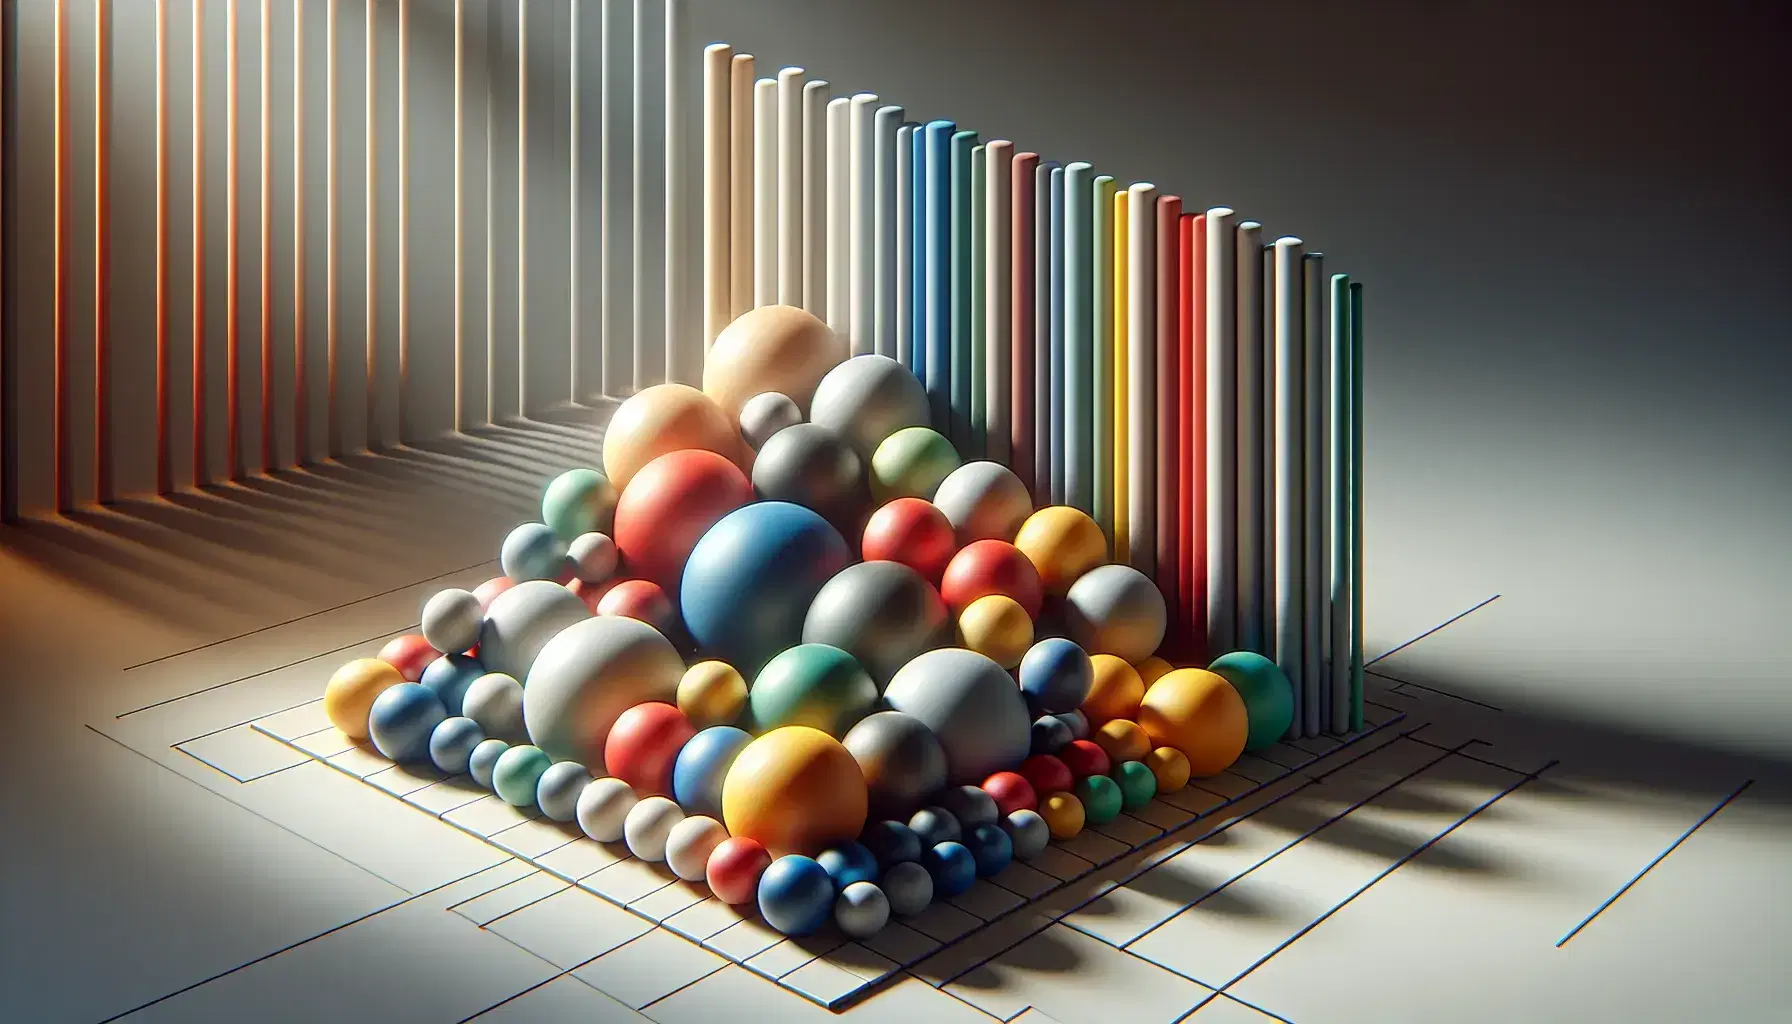 Esferas de colores variados en filas y columnas sobre superficie lisa con barras grises en 3D al fondo, reflejando luz y sombras suaves.